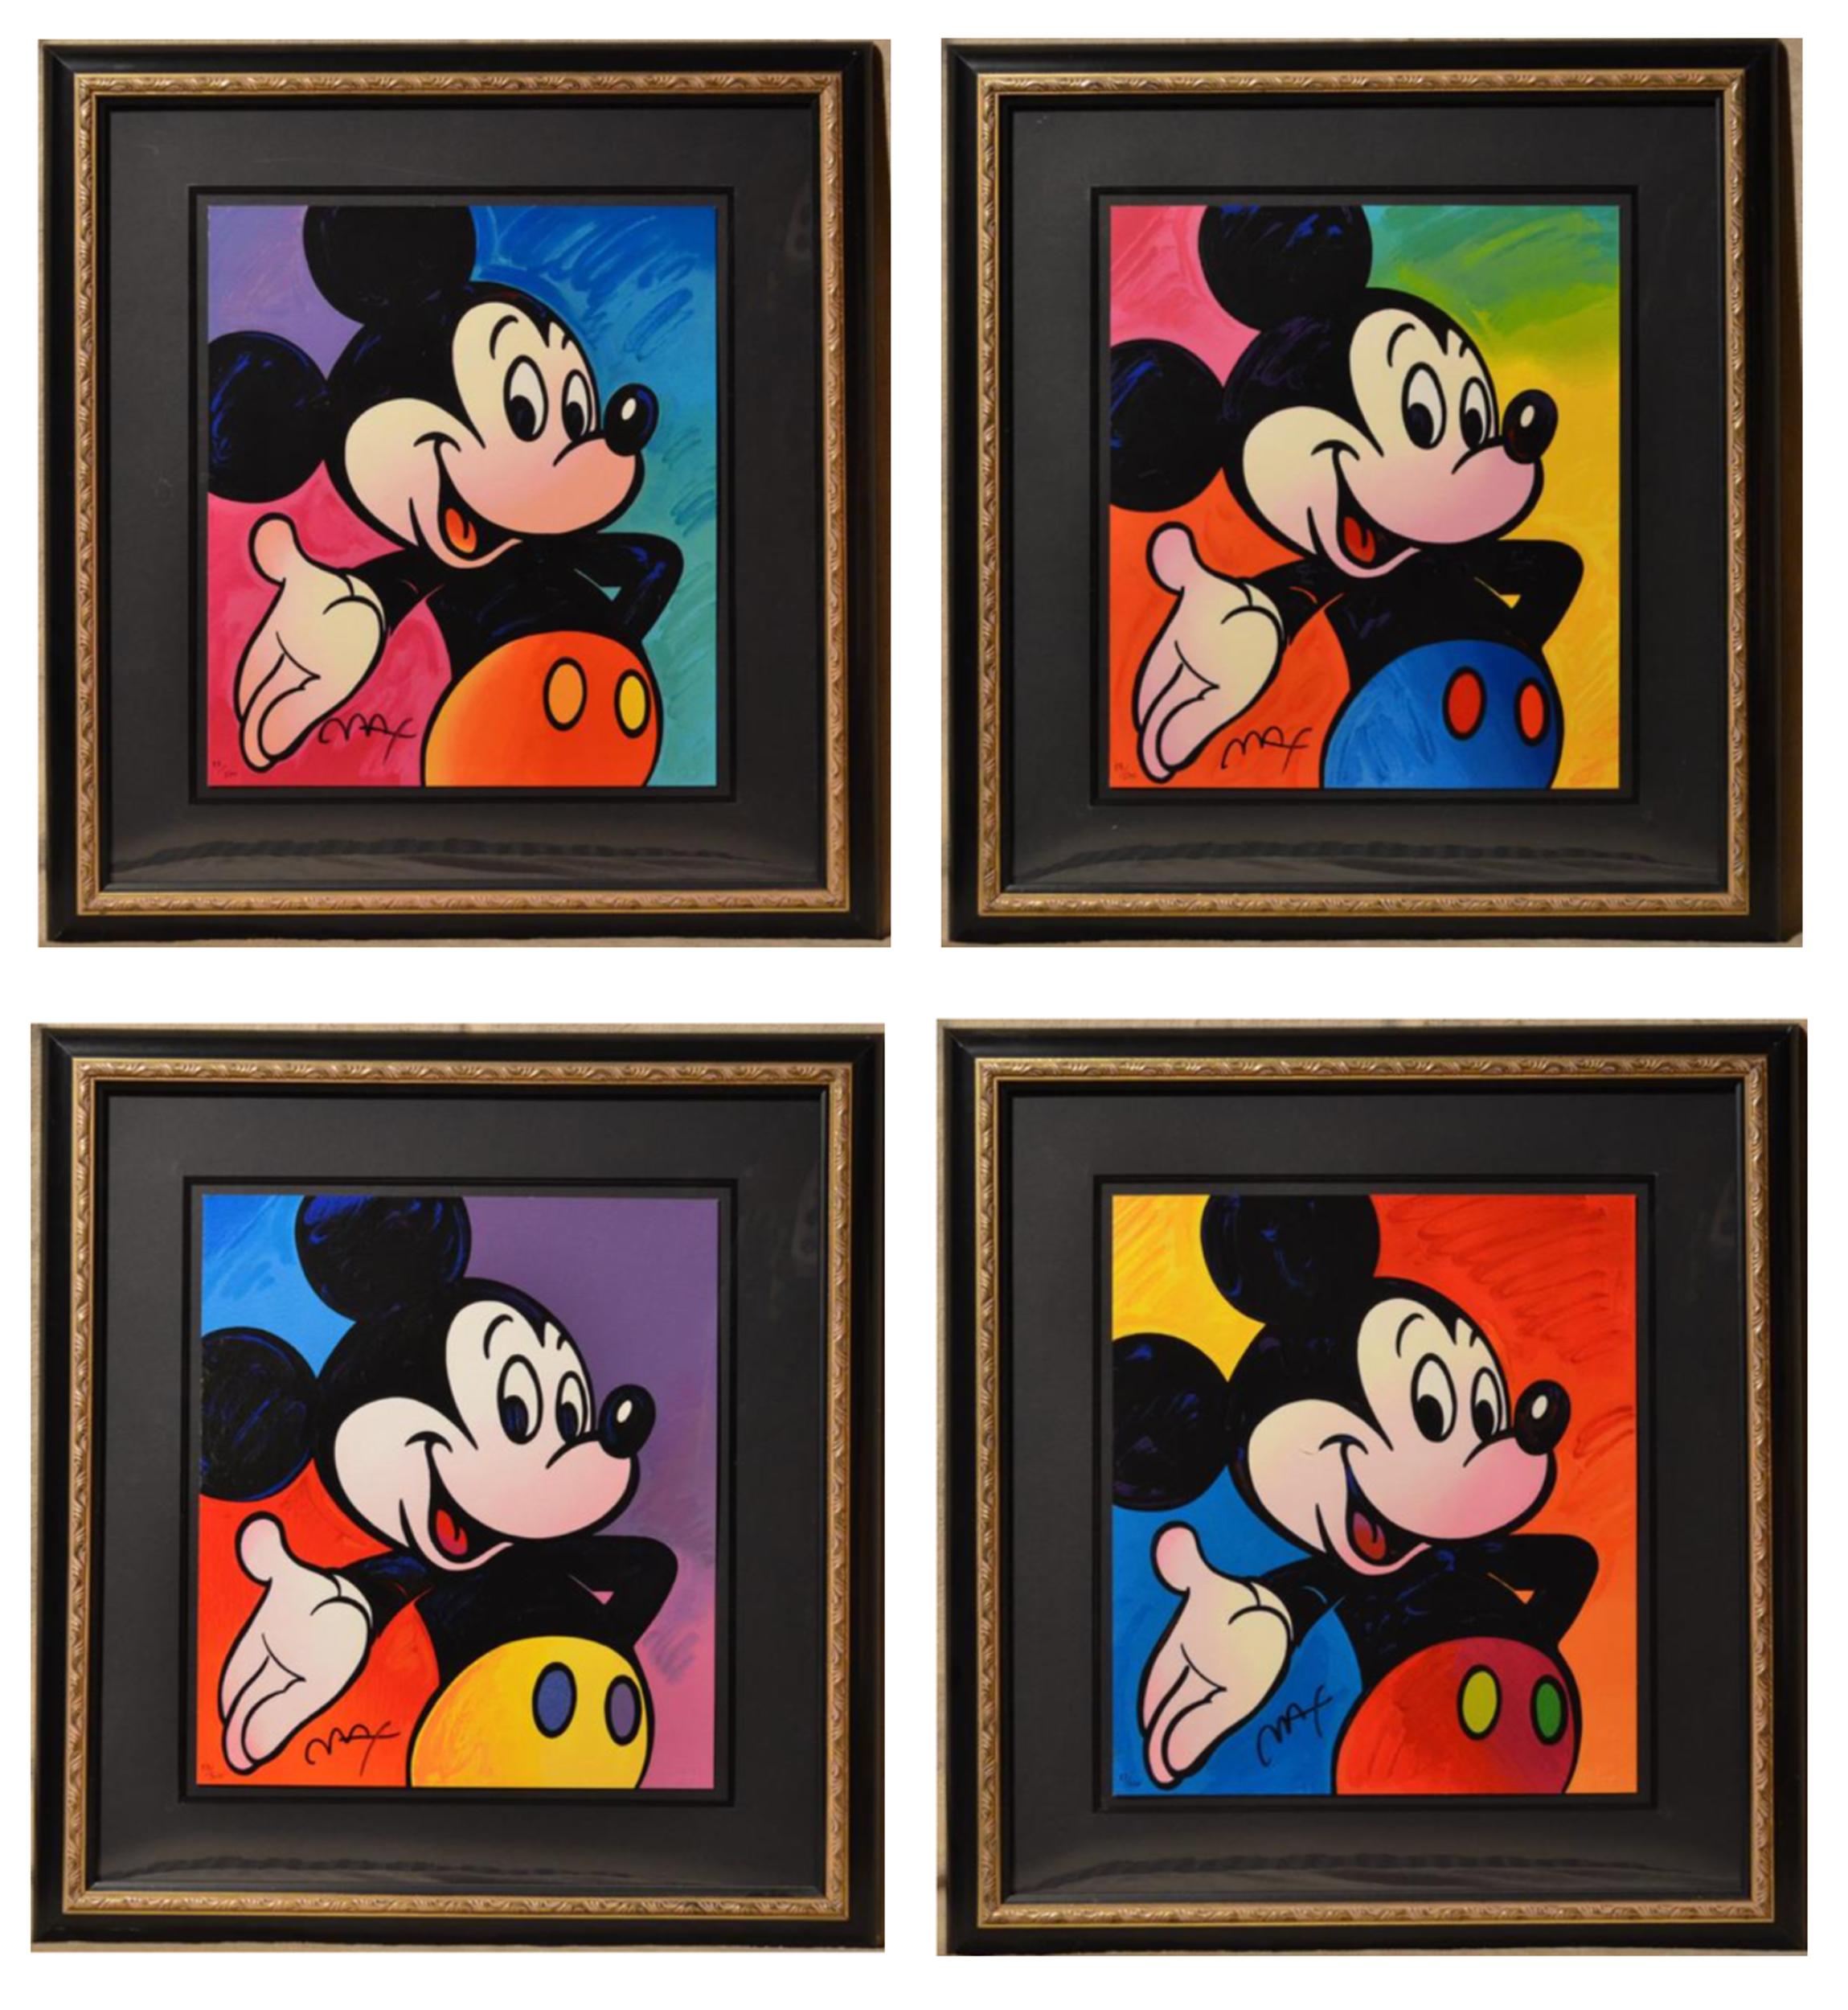 Une série de quatre sérigraphies Pop Art du célèbre personnage de Disney, Mickey Mouse, par l'artiste psychédélique Peter Max. Chaque pièce est joliment encadrée et signée par l'artiste.

Mickey Mouse
Peter Max, Allemand/Américain (1937)
Date :